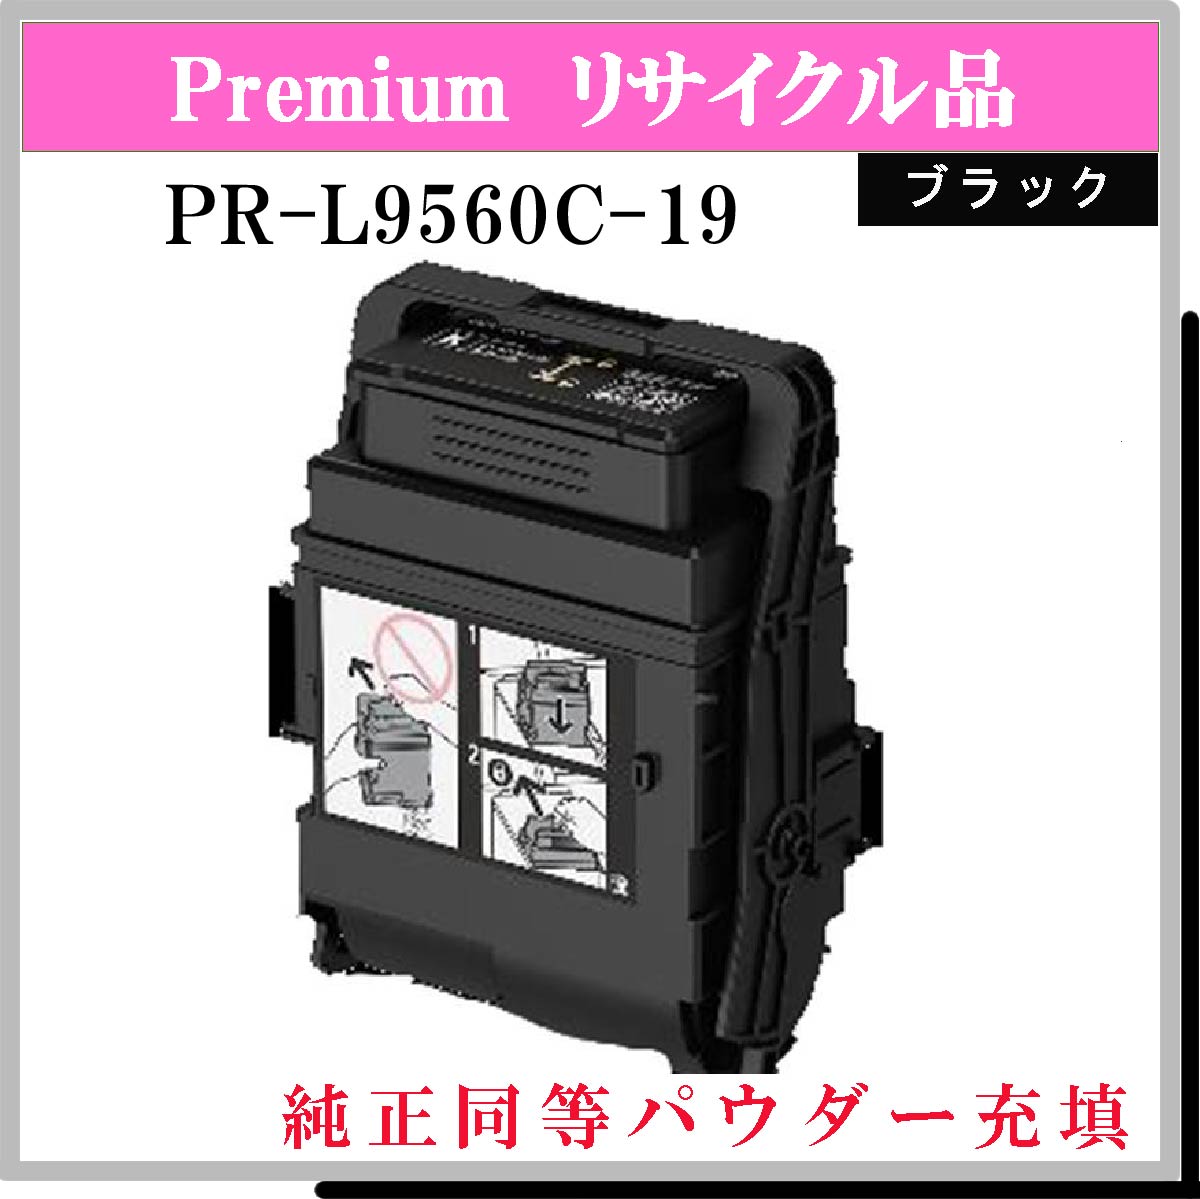 PR-L9560C-19 ﾌﾞﾗｯｸ (純正同等ﾊﾟｳﾀﾞｰ)